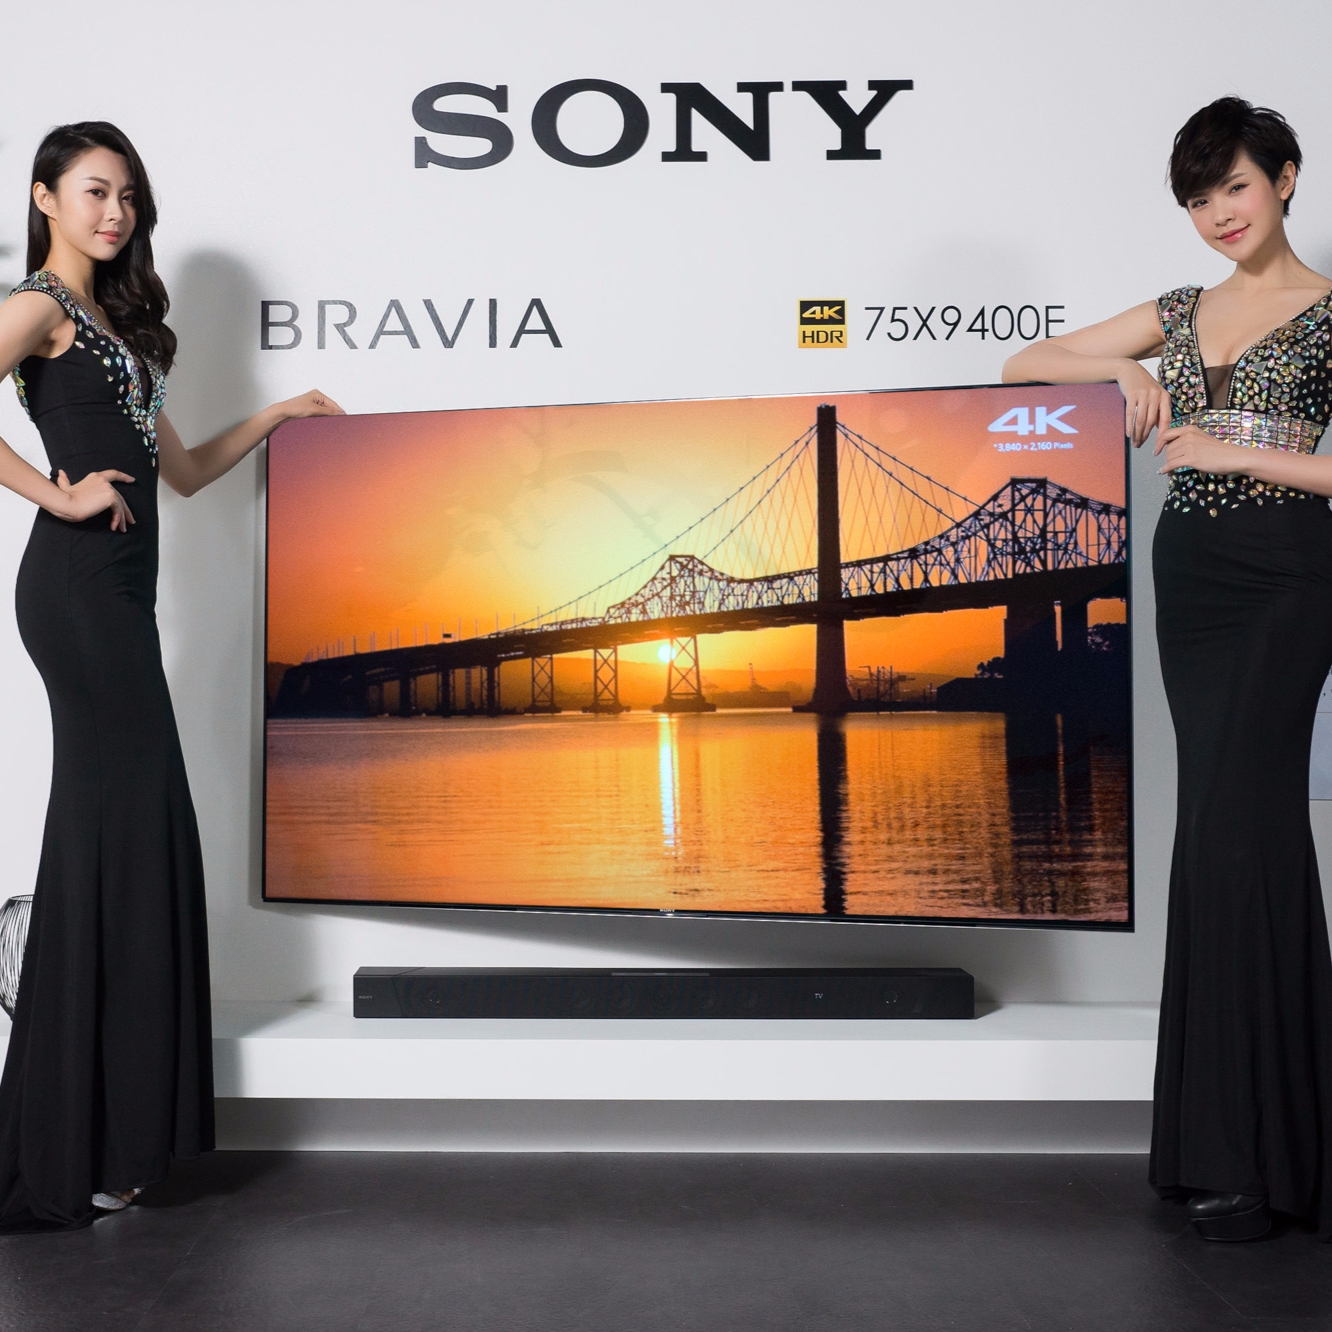 Sony 2017 全新BRAVIA電視發表 4K HDR OLED電視A1旗艦系列奪目登場  視聽合一「睛」彩獻映